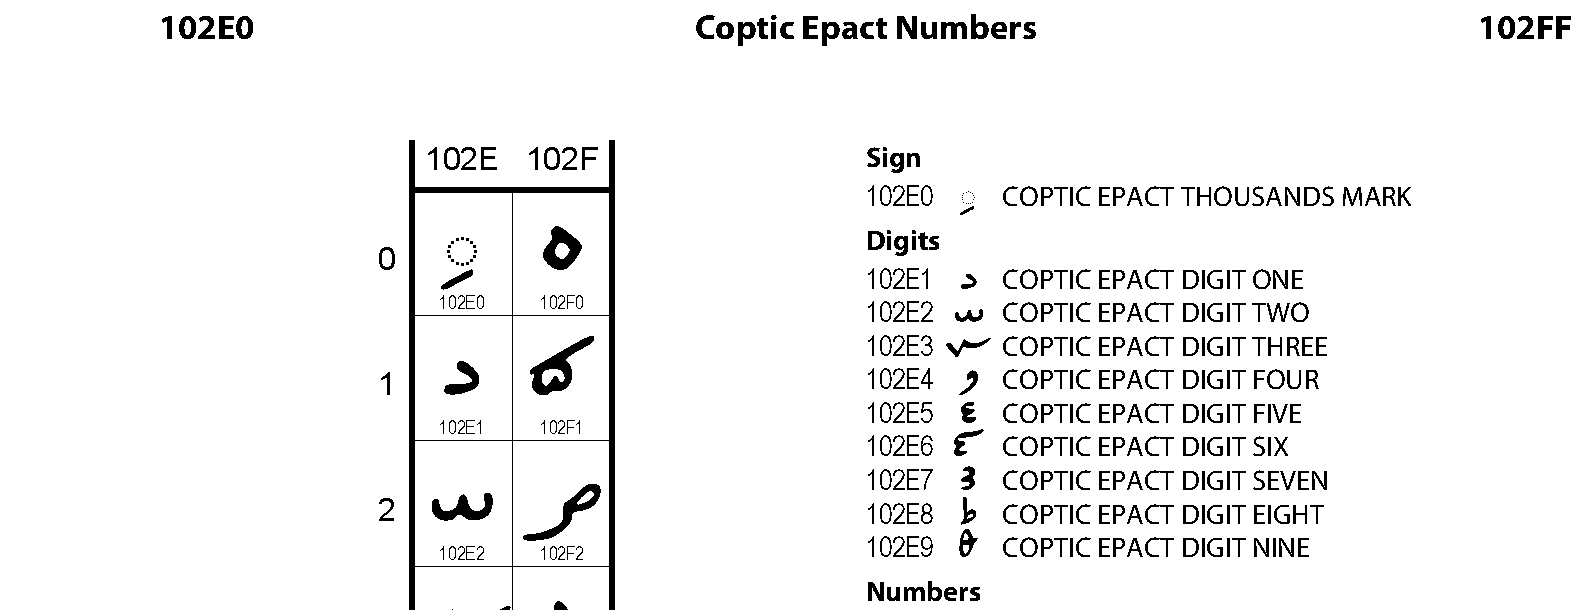 Unicode - Coptic Epact Numbers